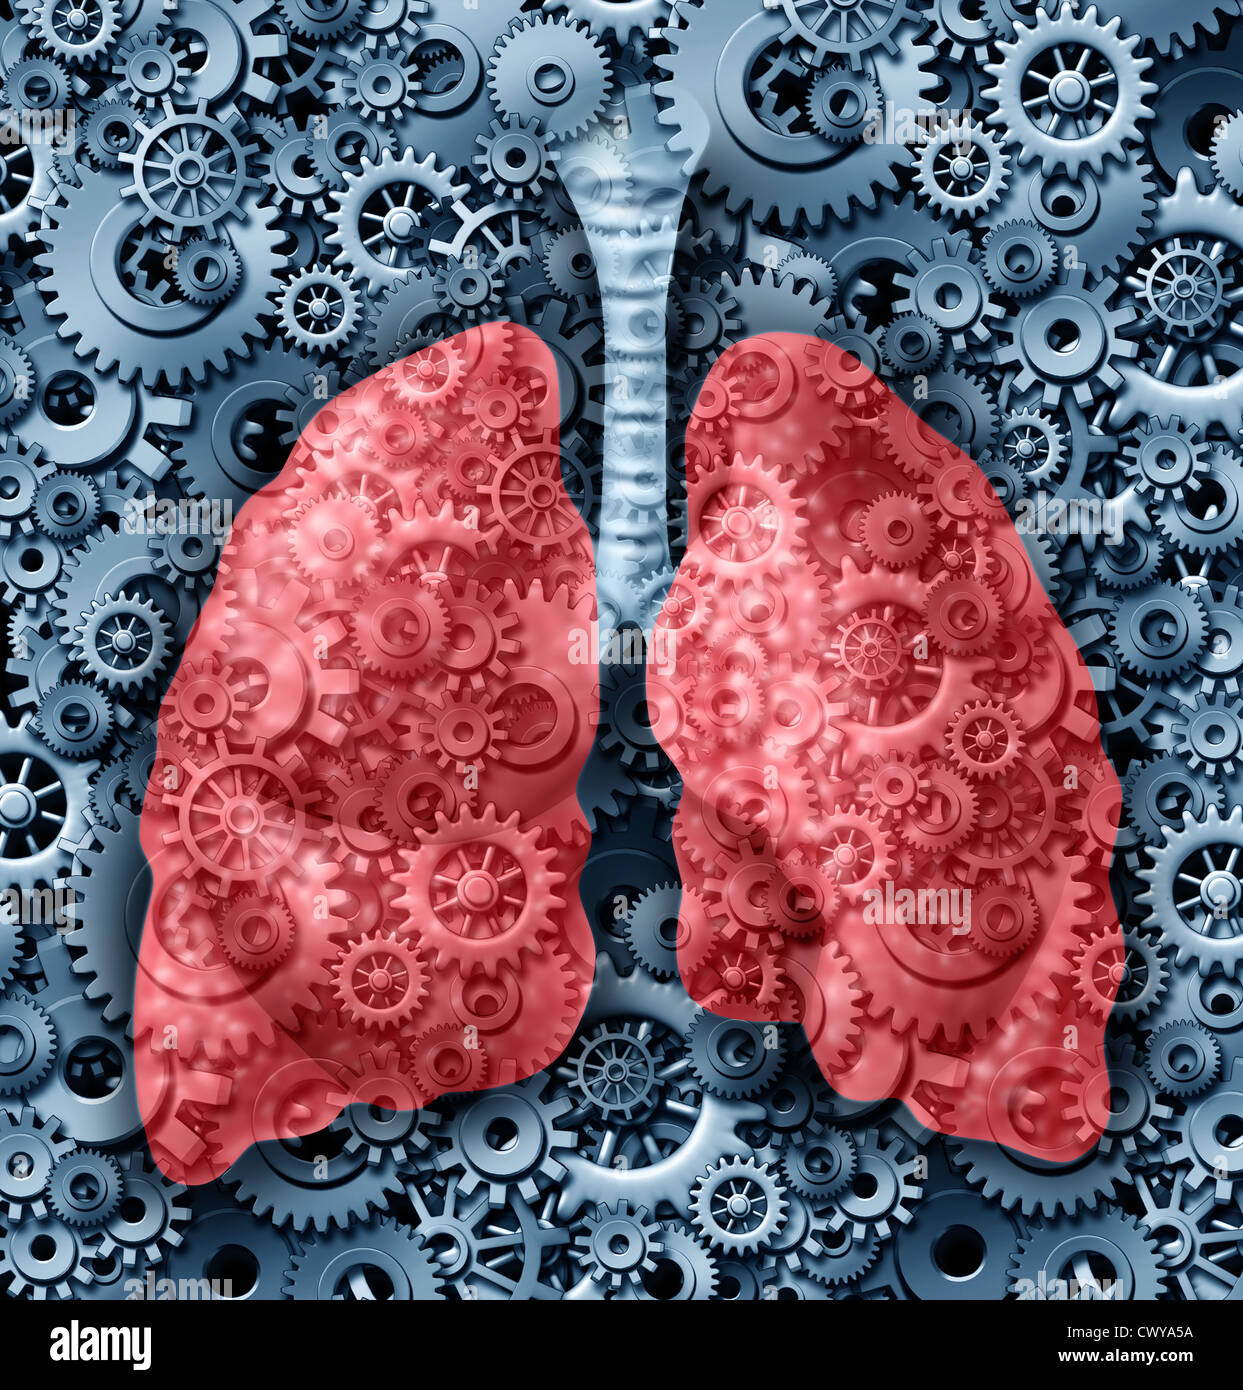 Menschliche Lunge Gesundheit medizinische Versorgung Symbol mit ...